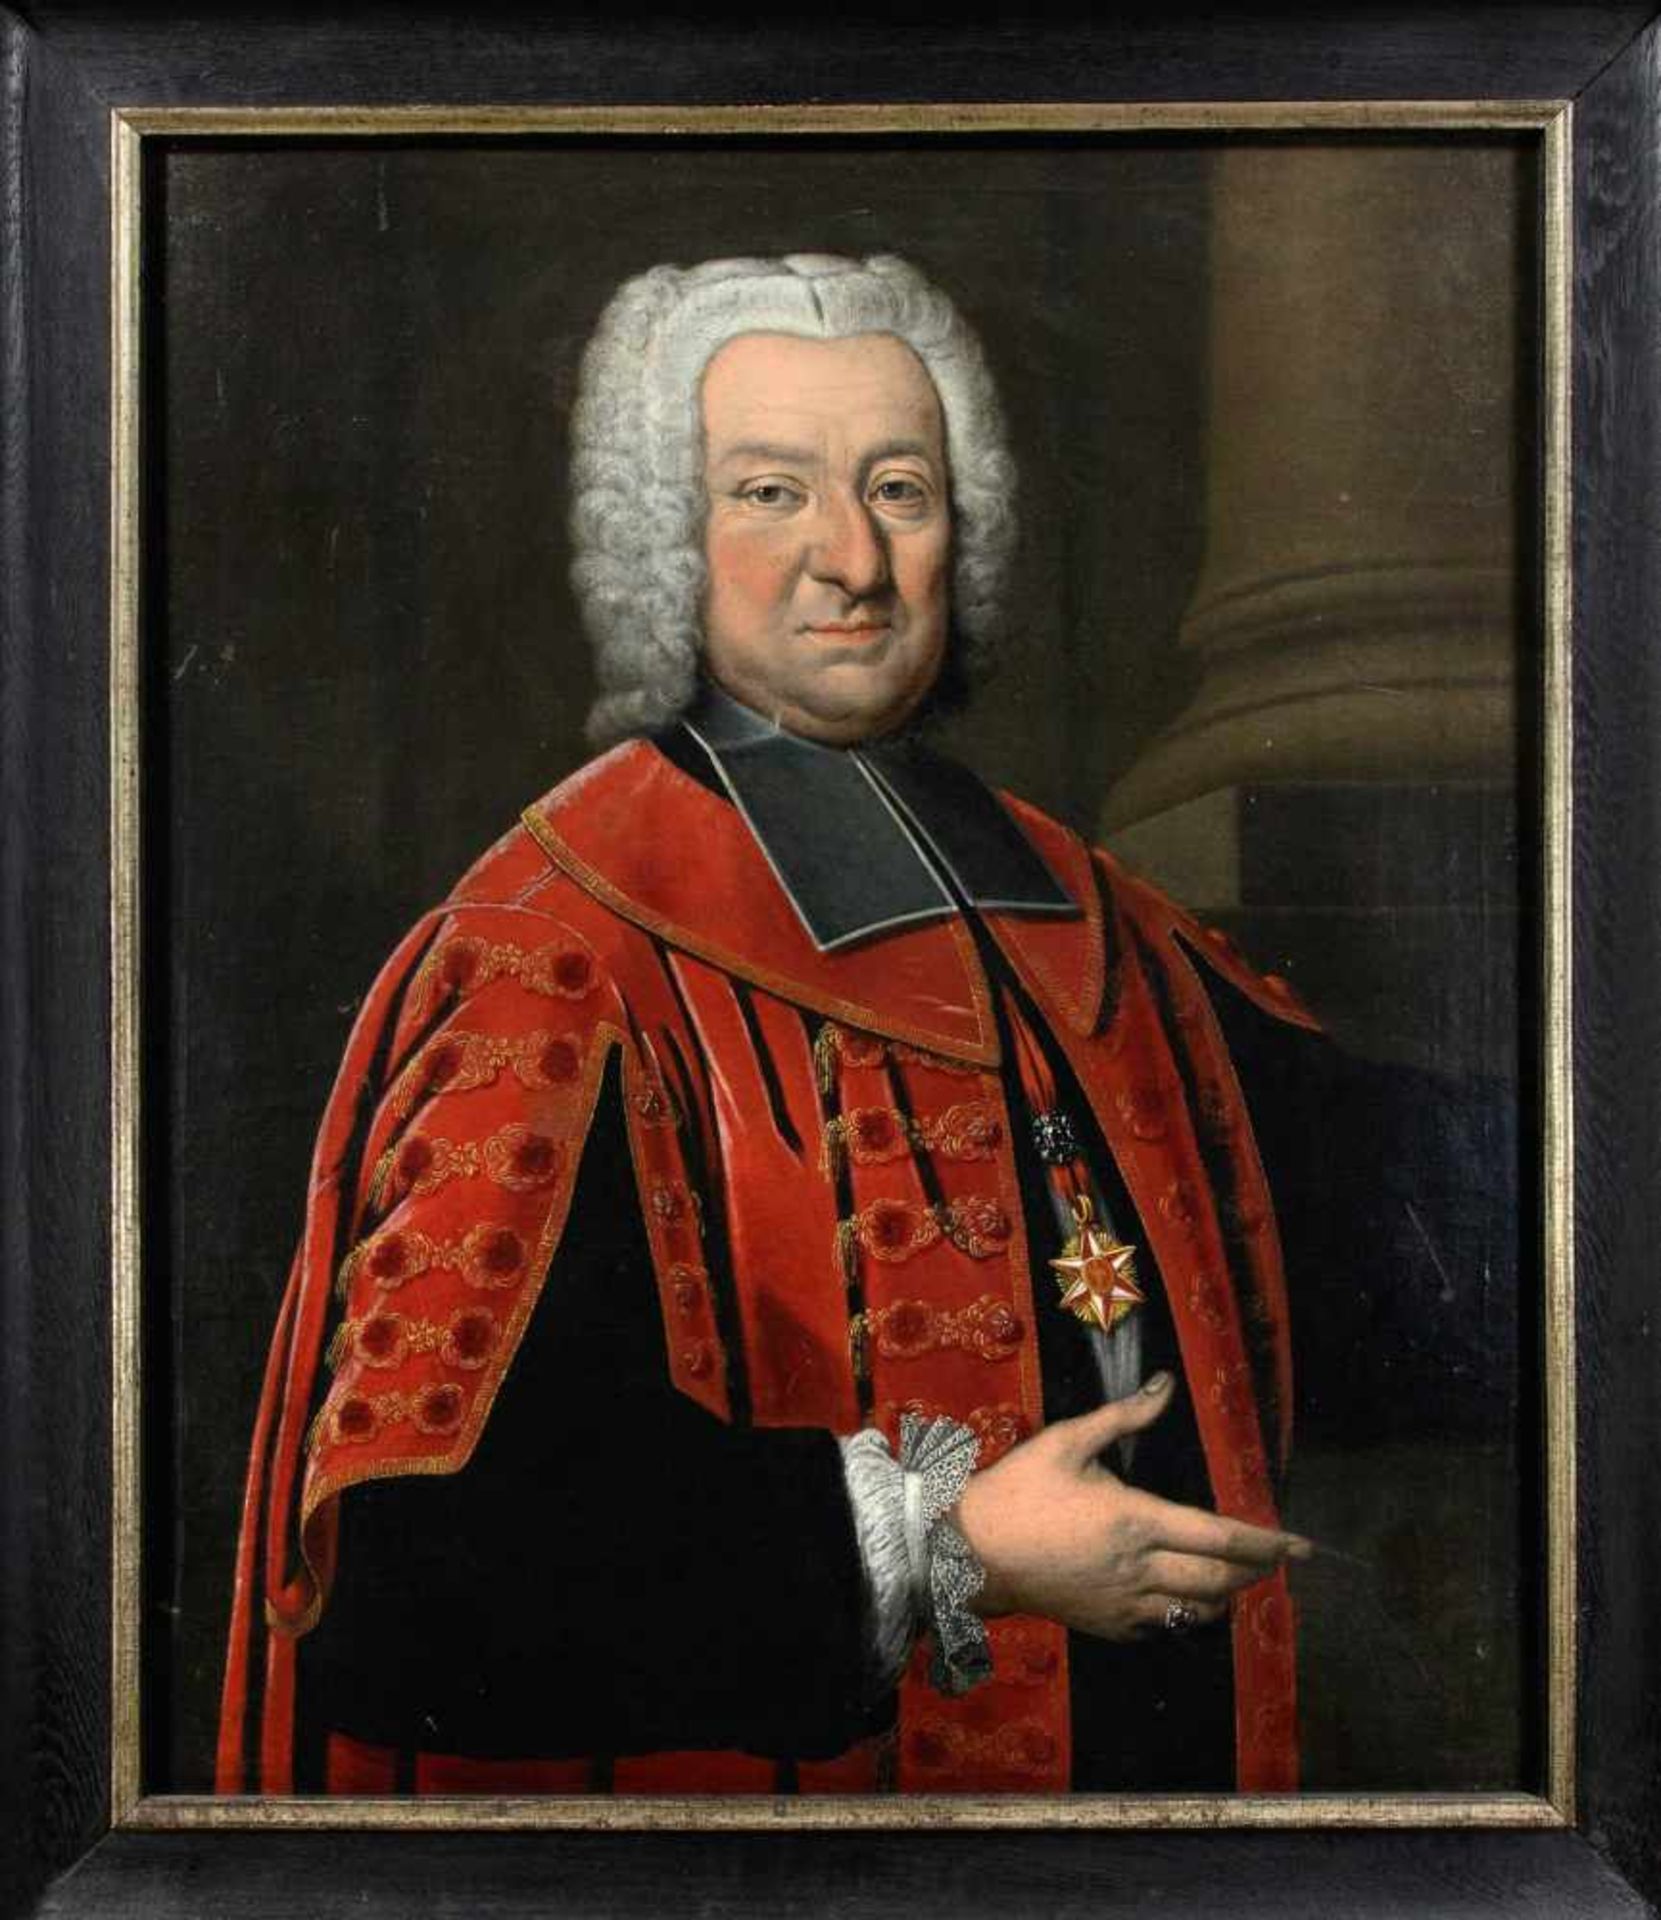 Bildnismaler des Barock um 1700, repräsentatives Portrait eines katholischen Geistlichenmit